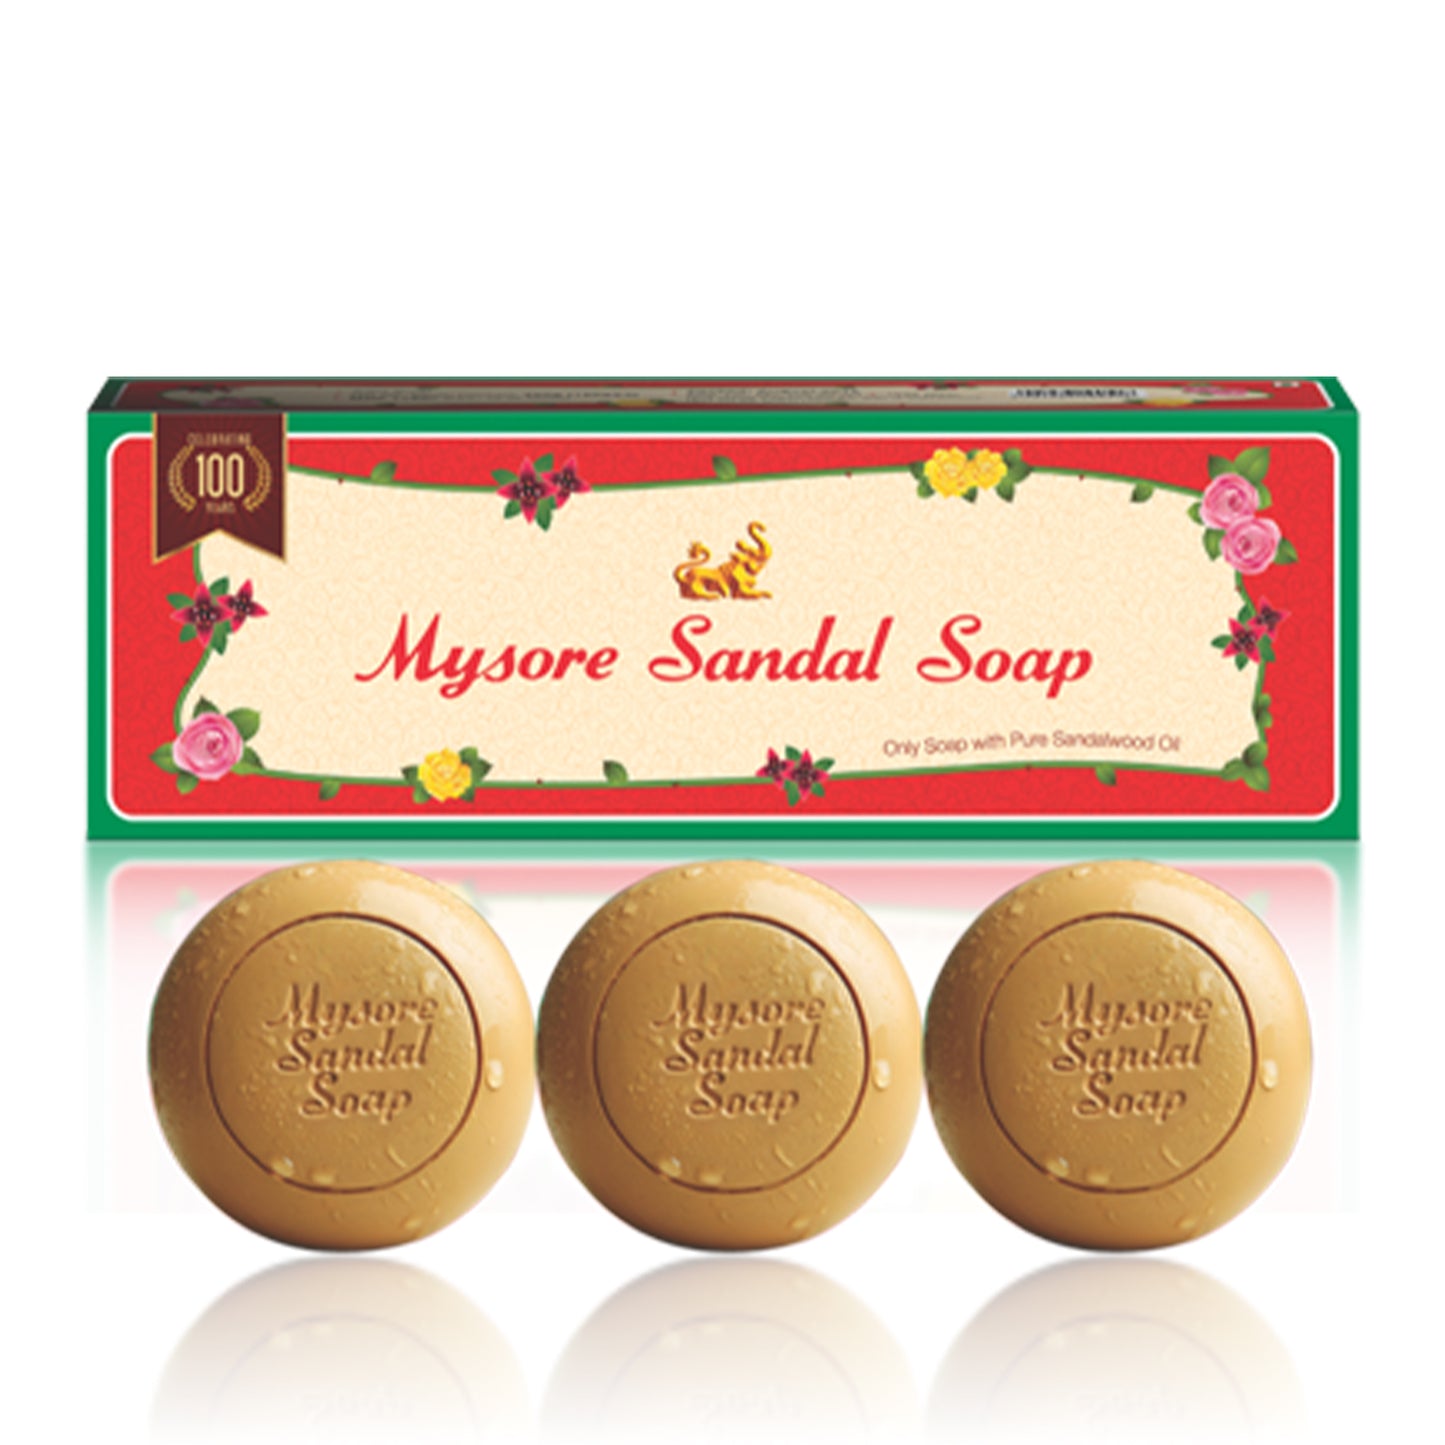 Mysore Sandal Soap, 3x150gm